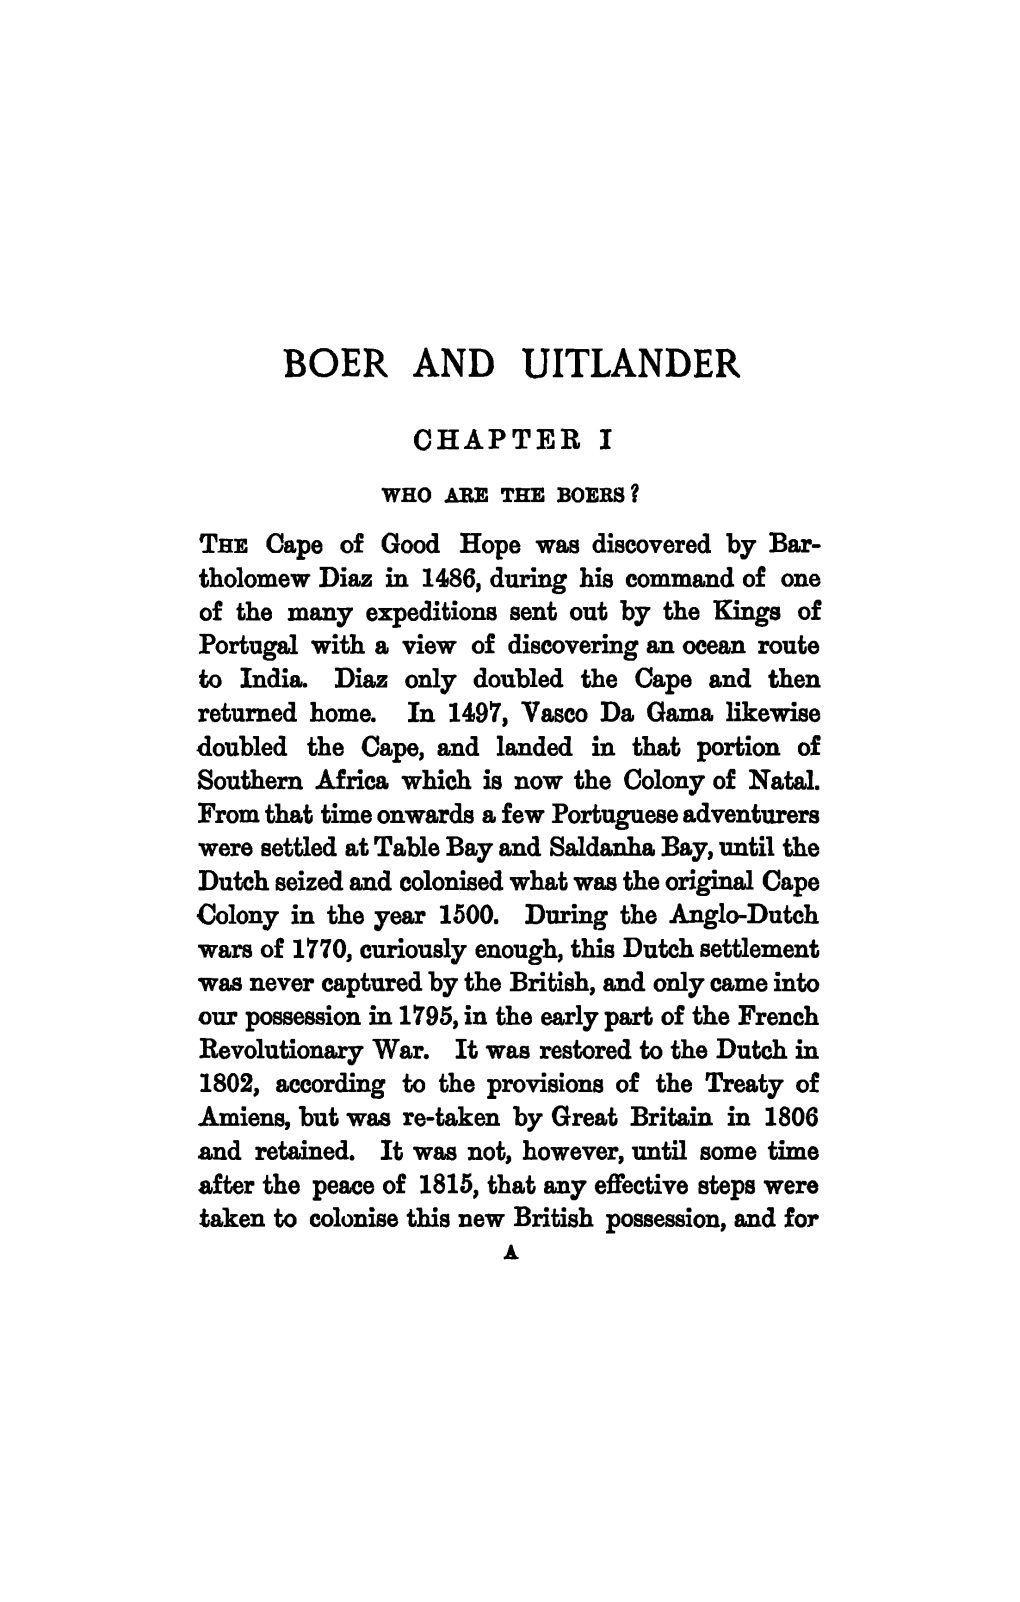 Boer and Uitlander